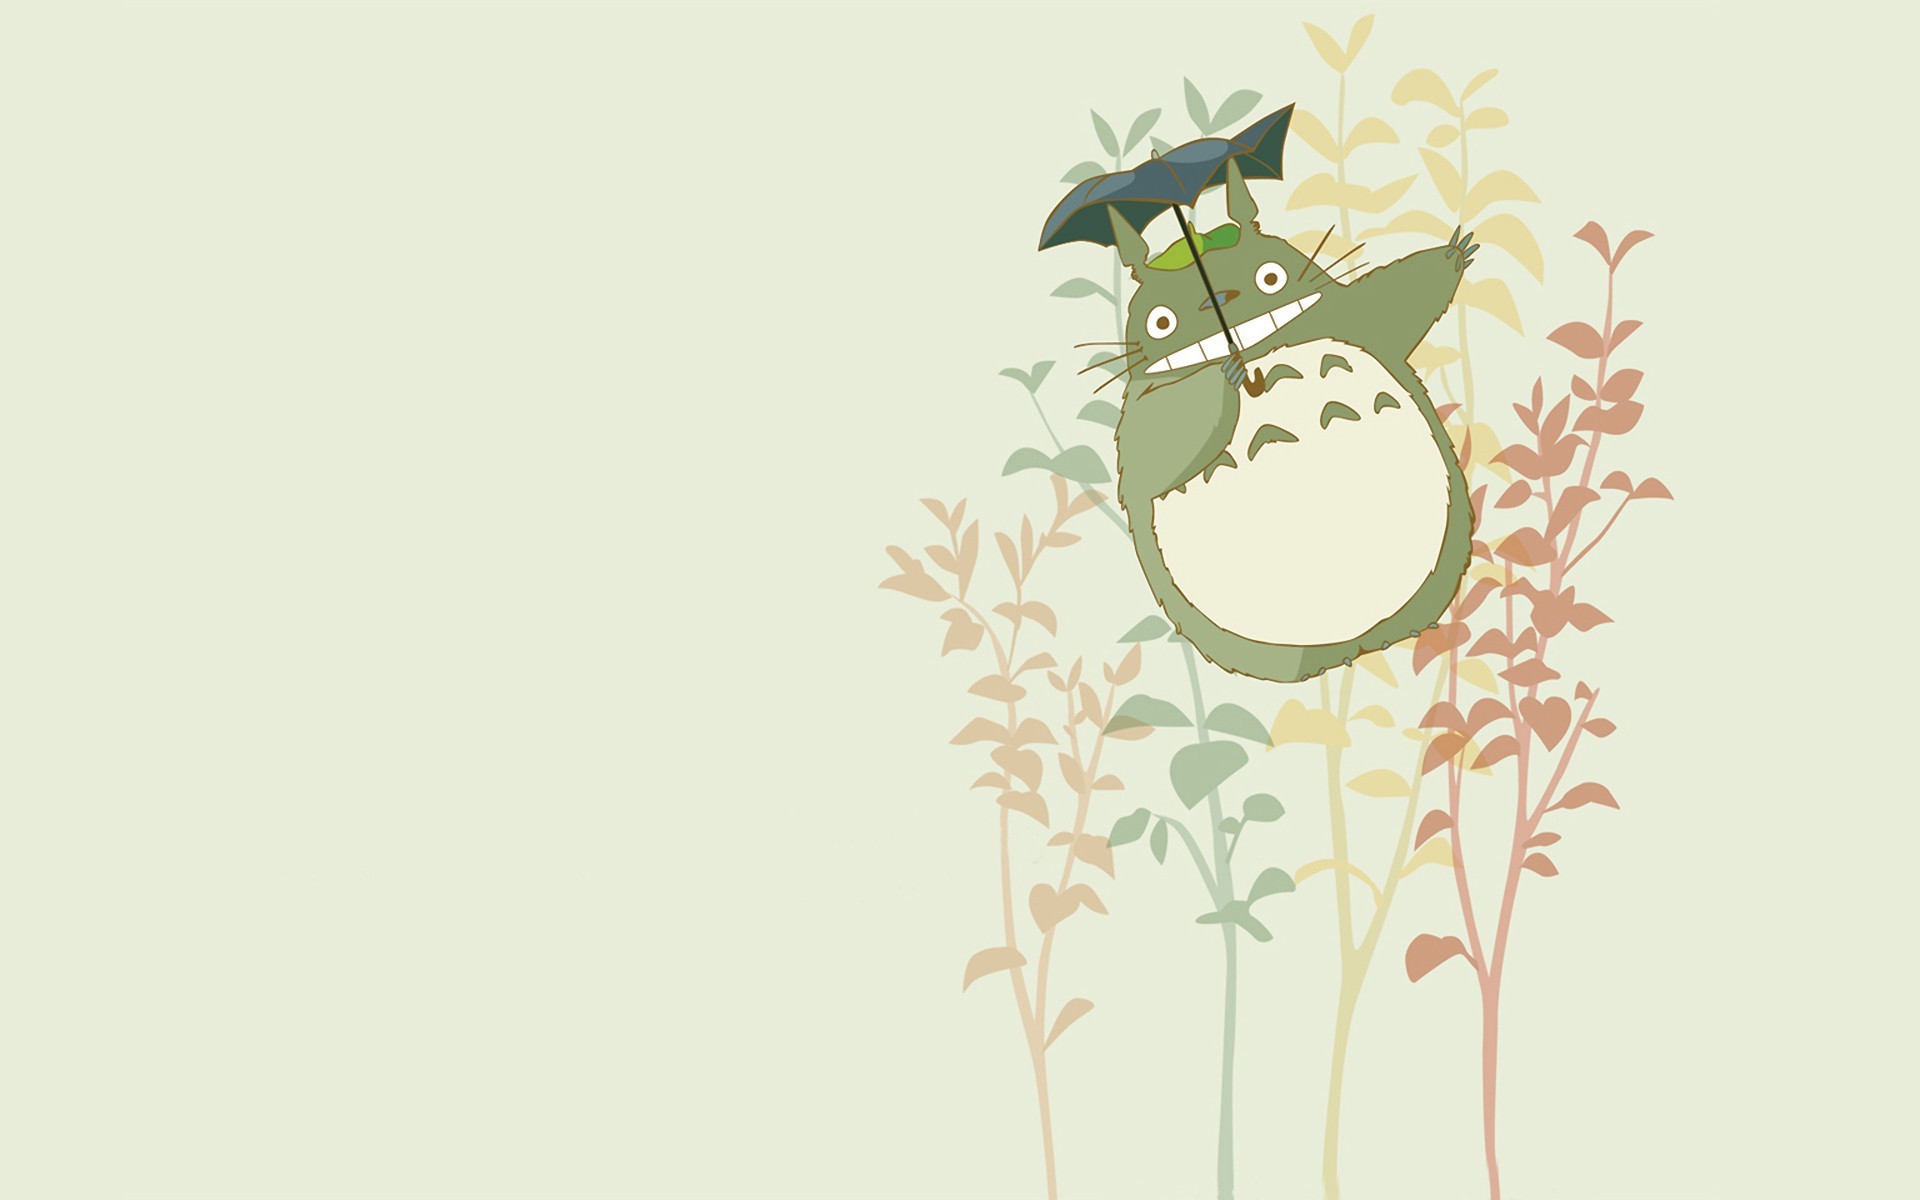 totoro wallpaper,green,cartoon,illustration,grass,tree